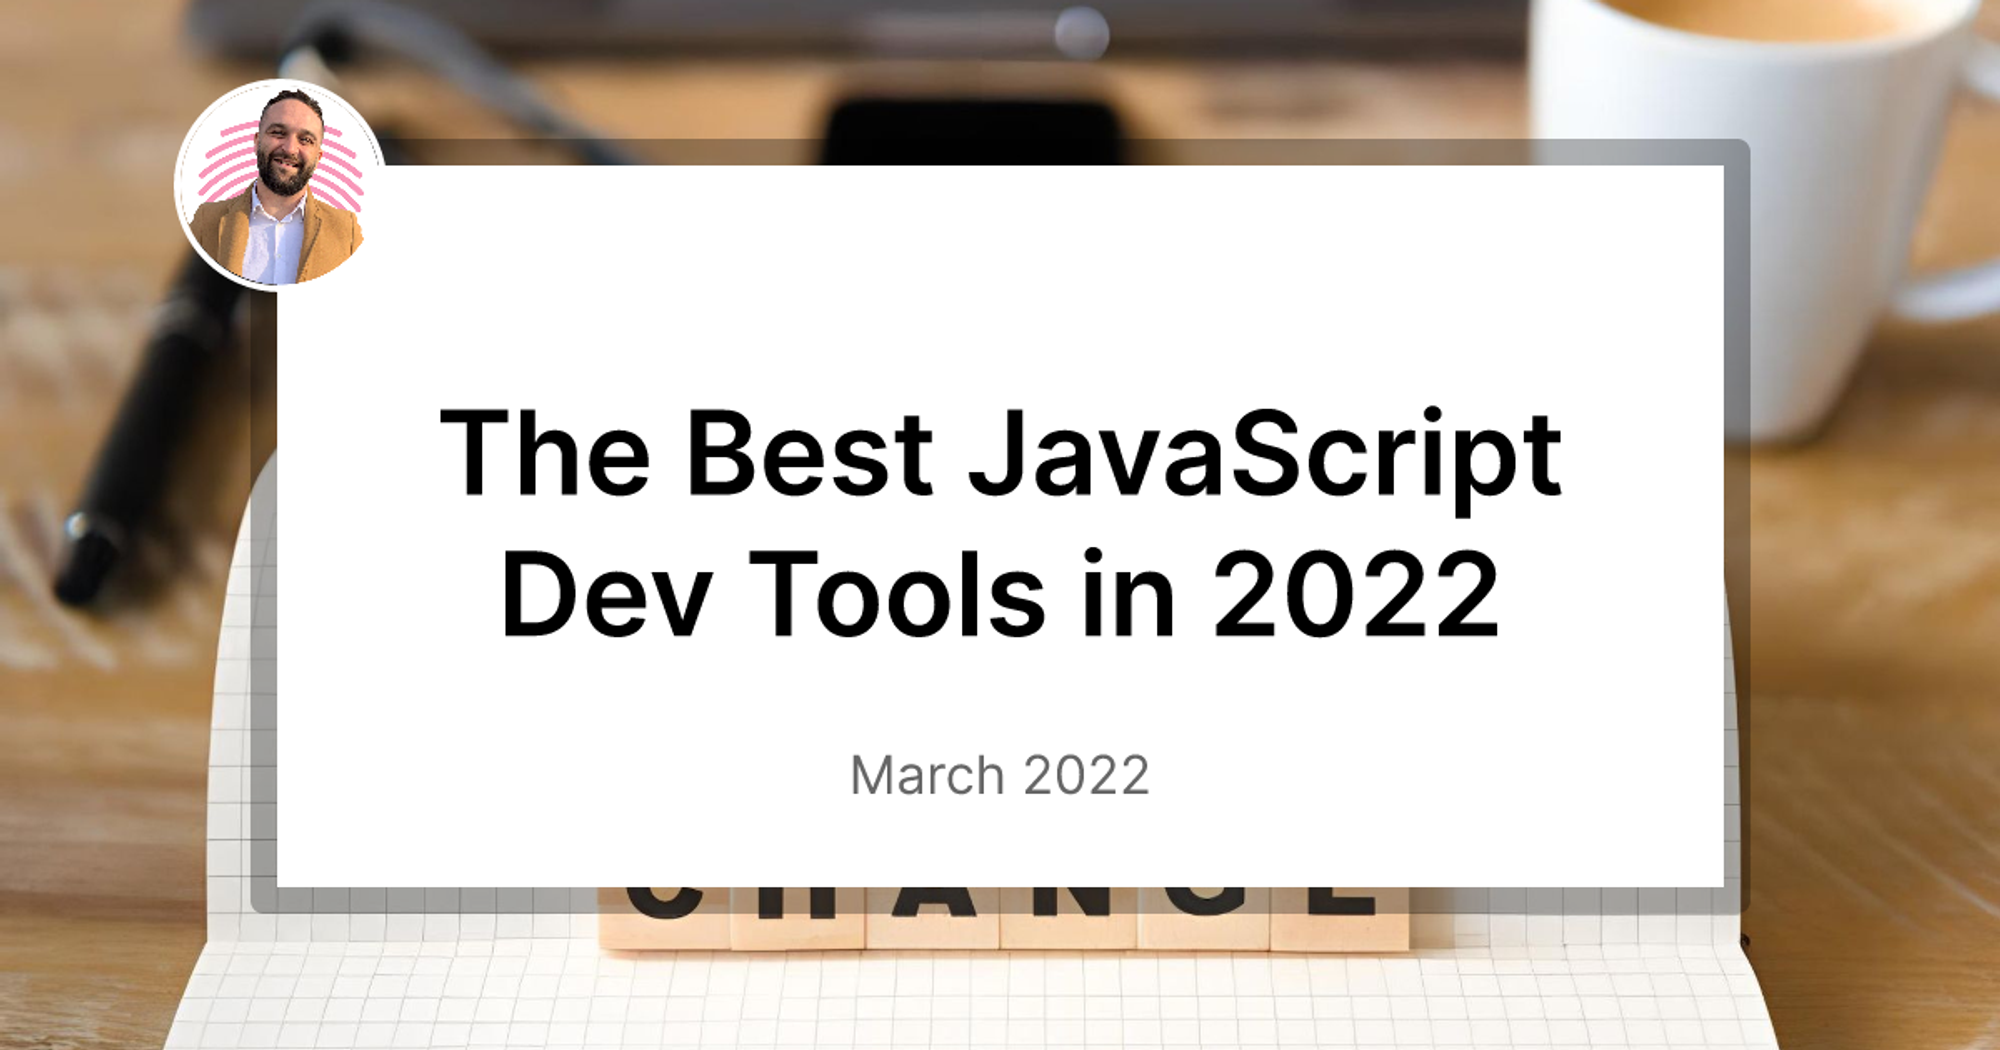 The Best JavaScript Dev Tools in 2022